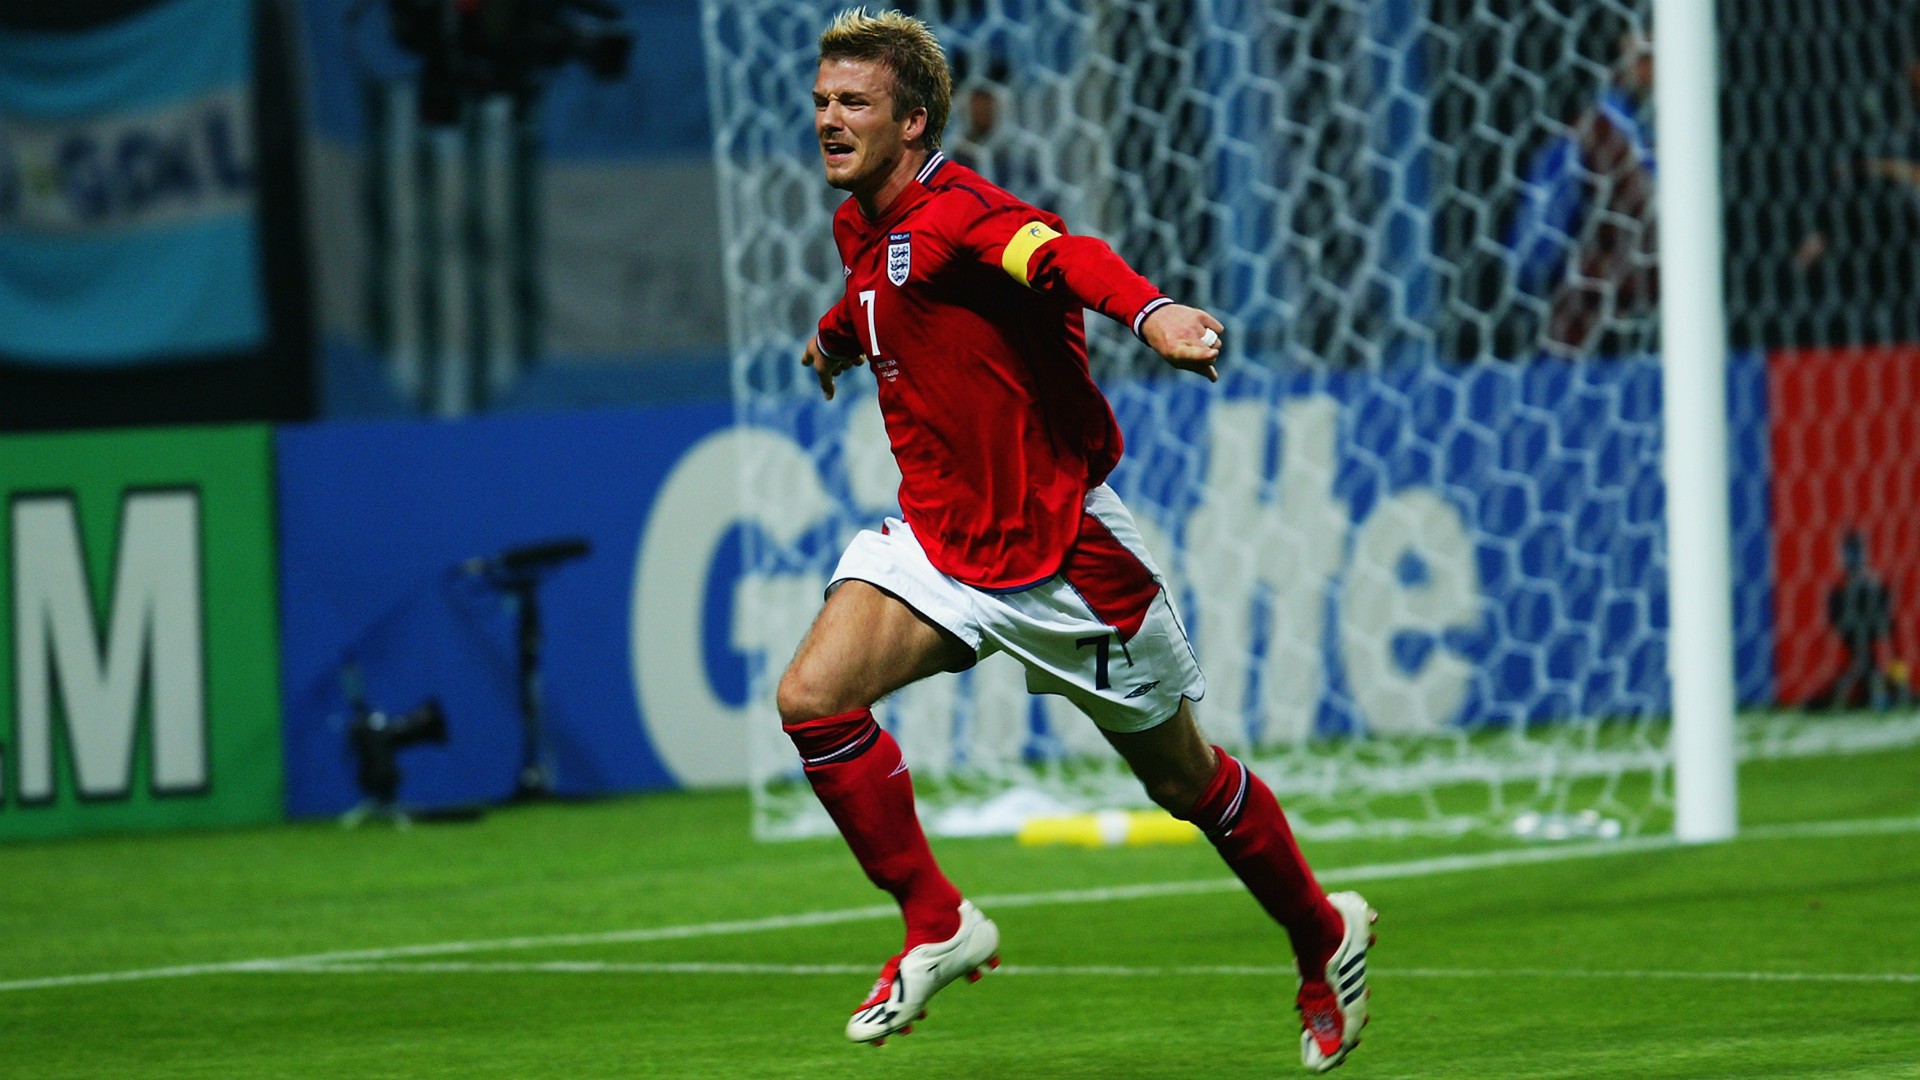 Beckham đã mang Predator khi ghi tên mình vào lịch sử bóng đá thế giới nhờ những bàn thắng đỉnh cao tại World Cup 2002